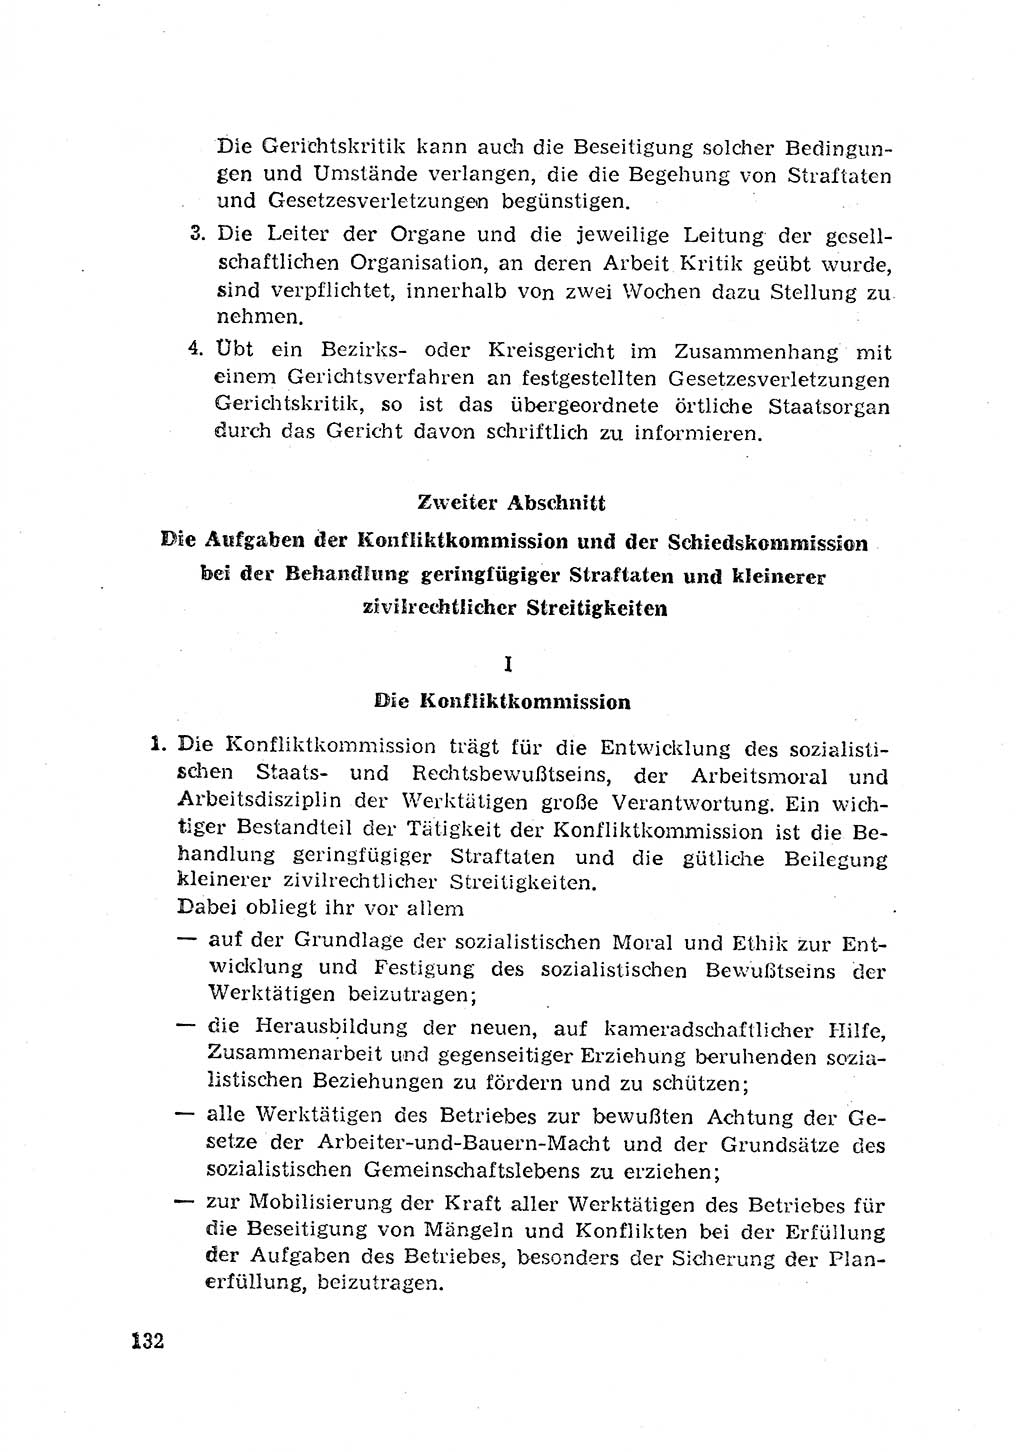 Rechtspflegeerlaß [Deutsche Demokratische Republik (DDR)] 1963, Seite 132 (R.-Pfl.-Erl. DDR 1963, S. 132)